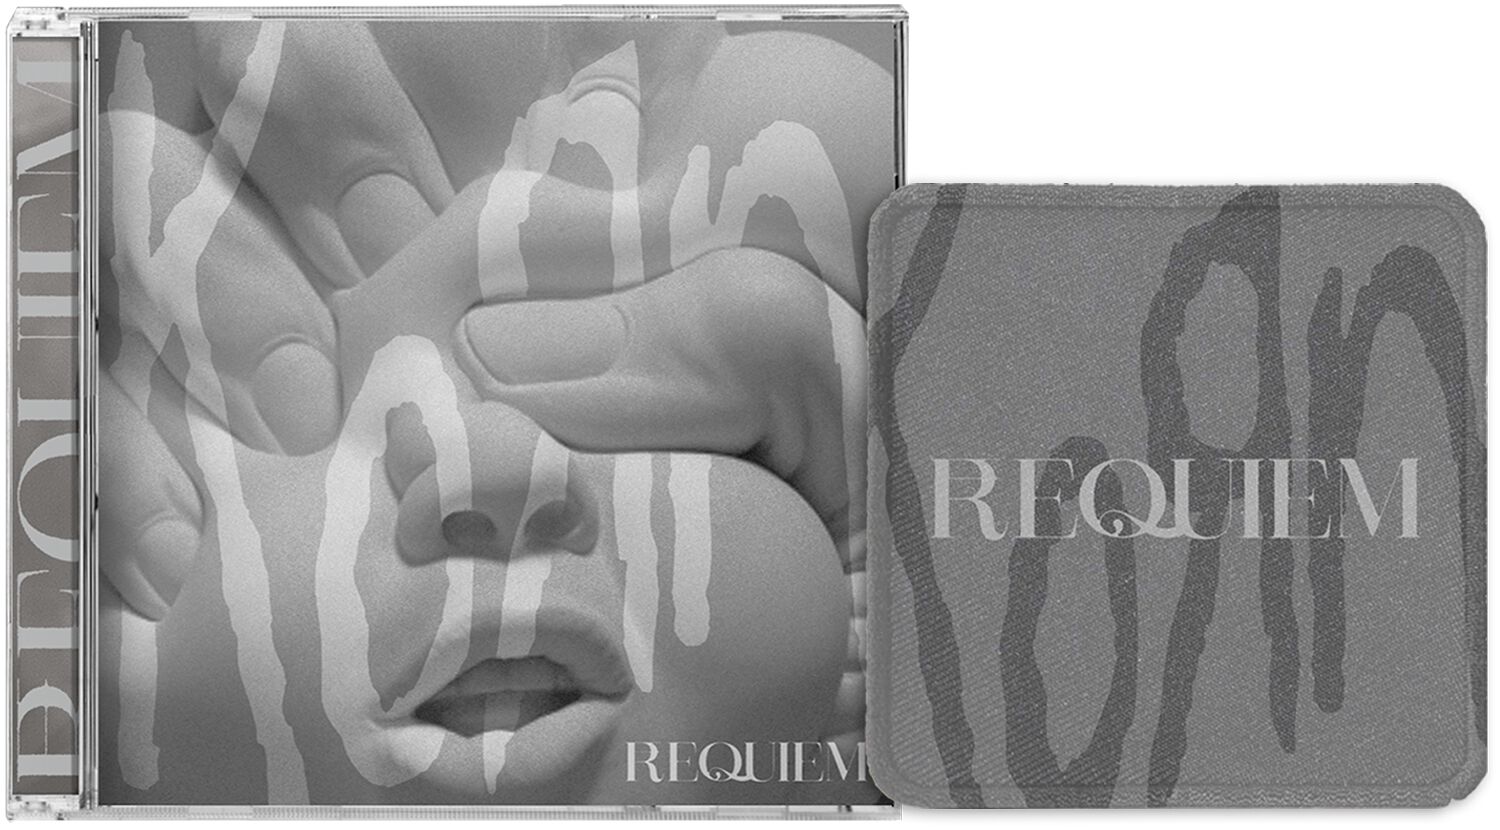 Korn Requiem CD multicolor